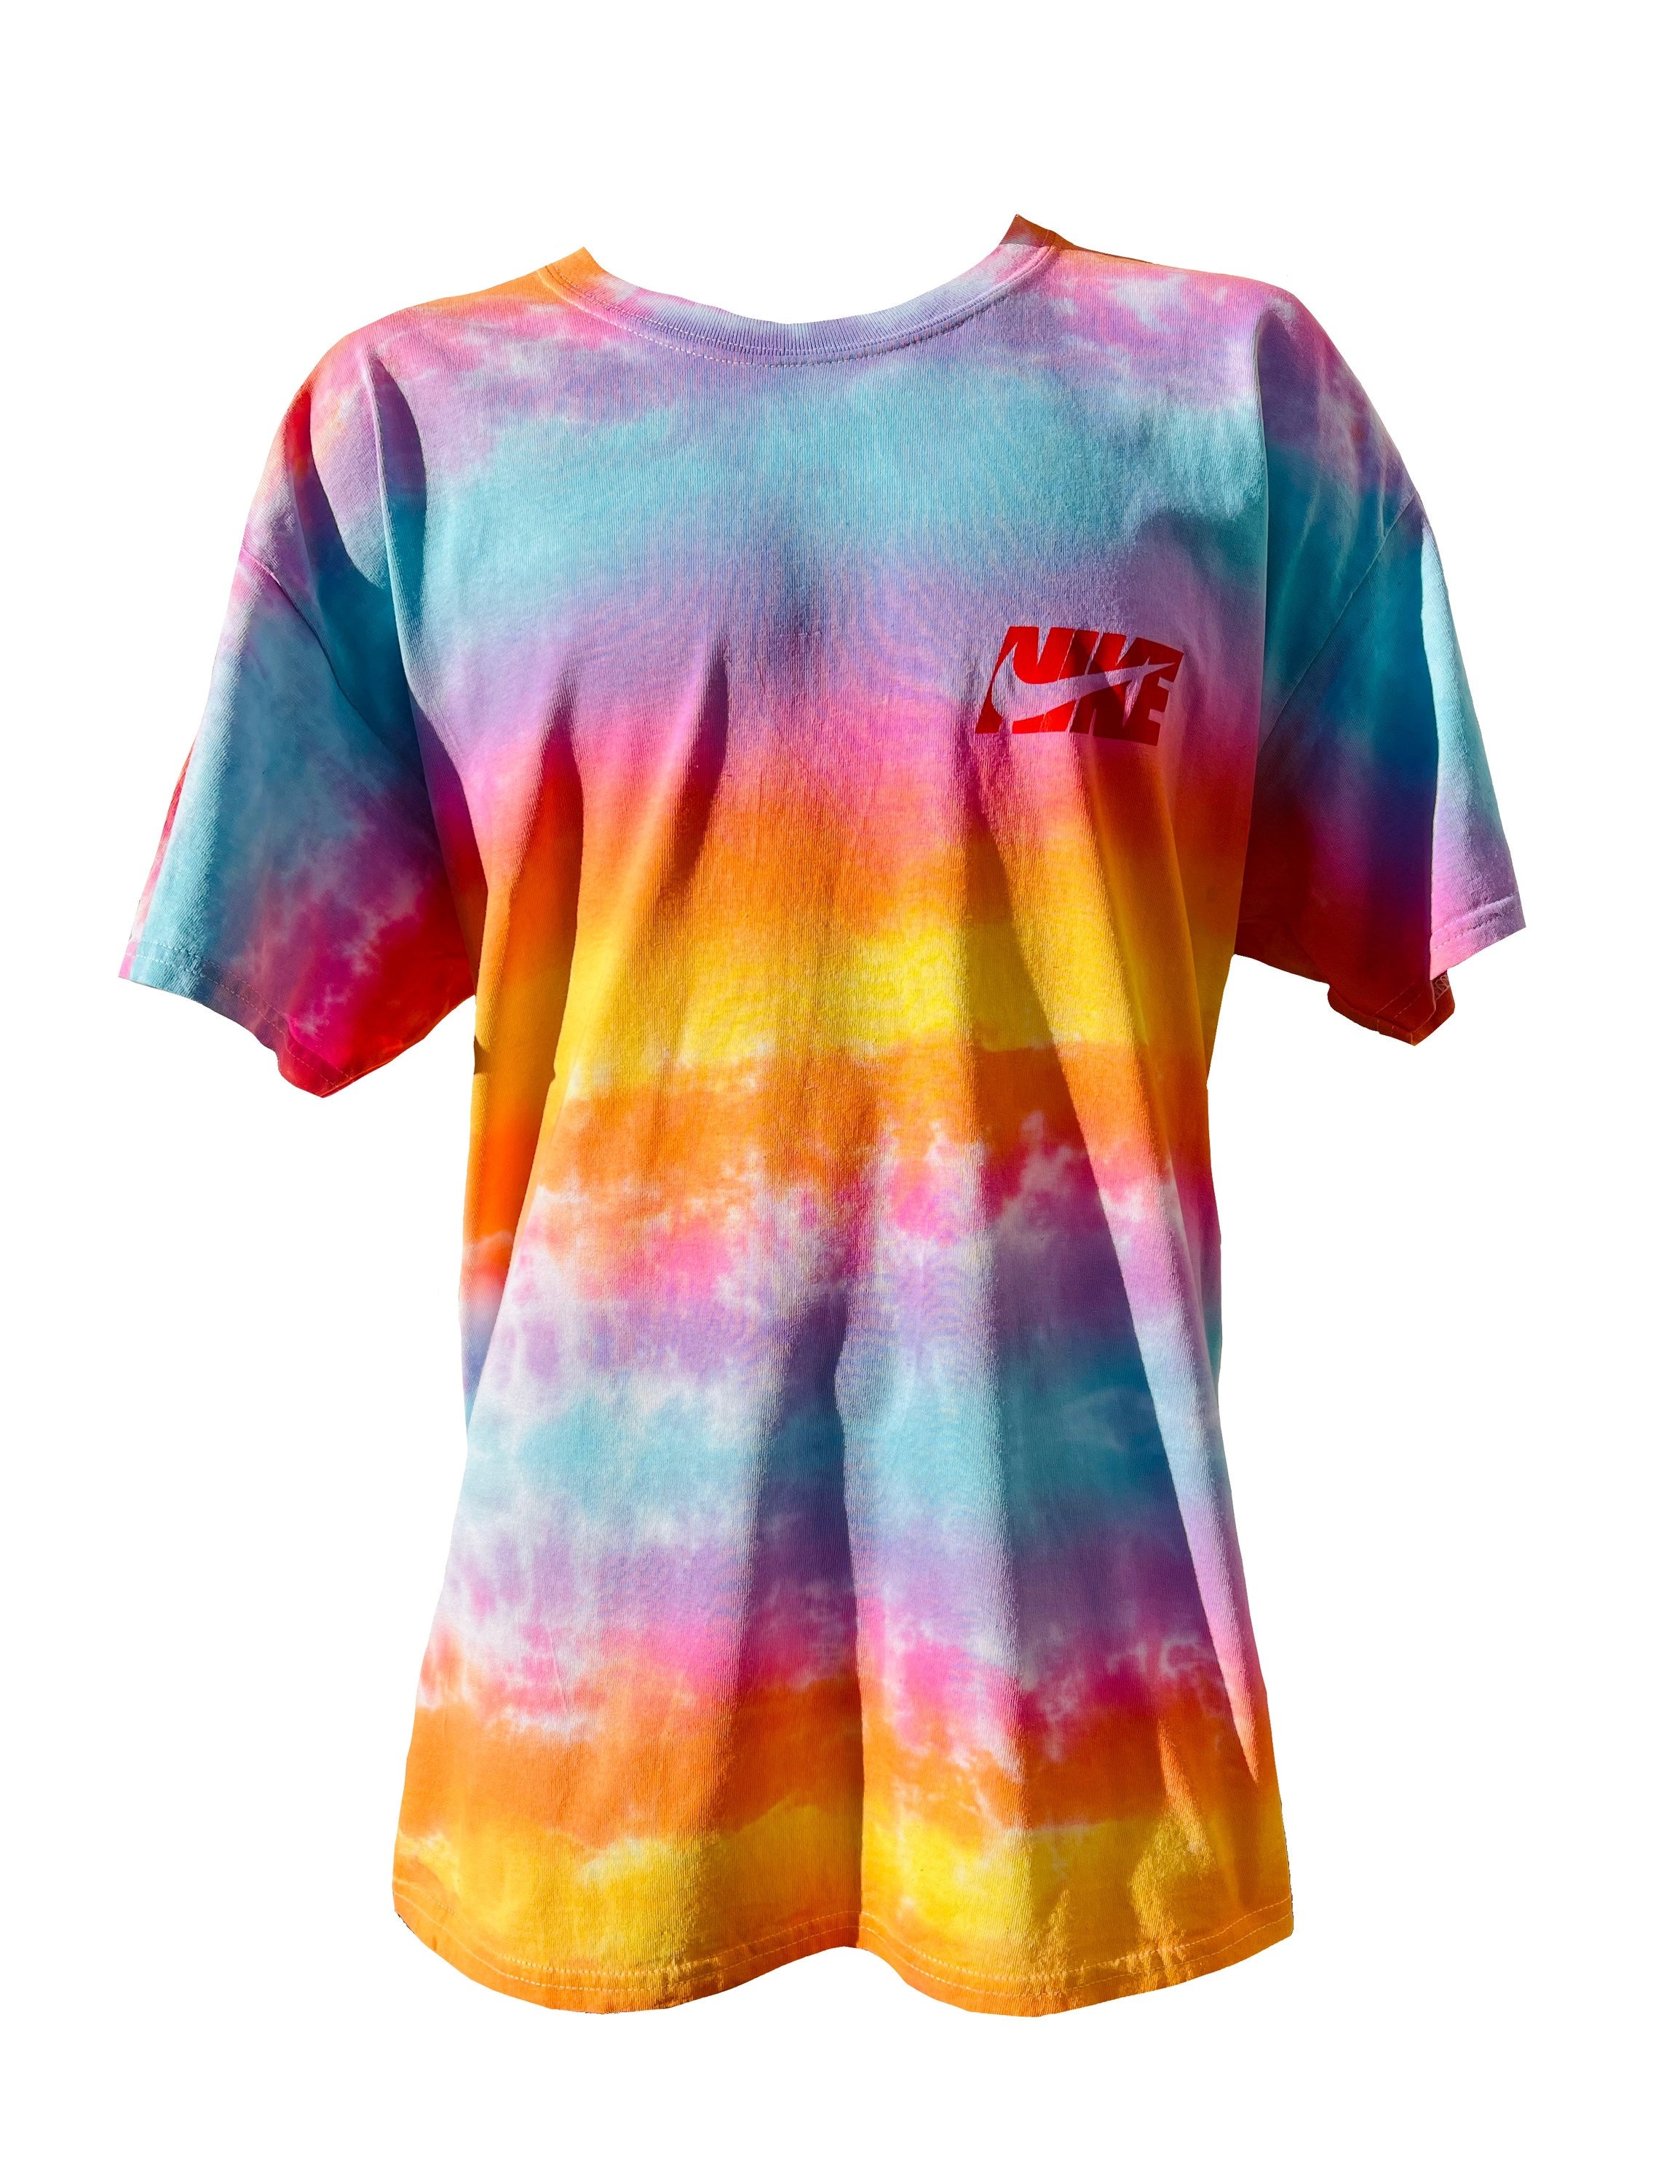 Nike branded tie dye dye T-shirt | Etsy